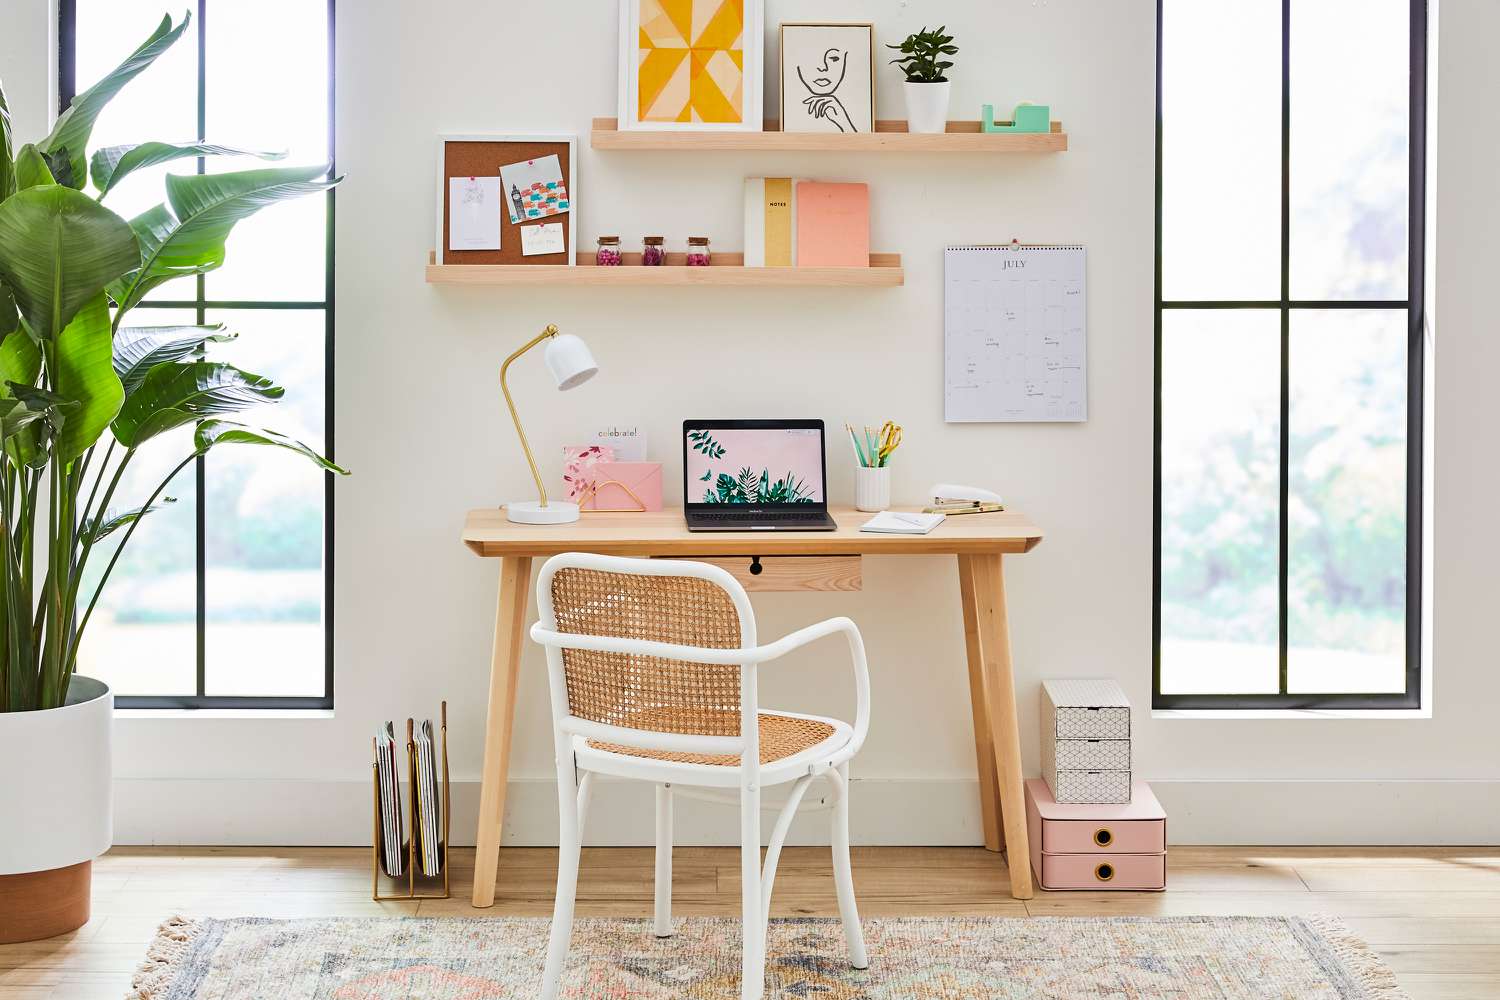 Zona de oficina en casa con coloridos objetos decorativos en estanterías